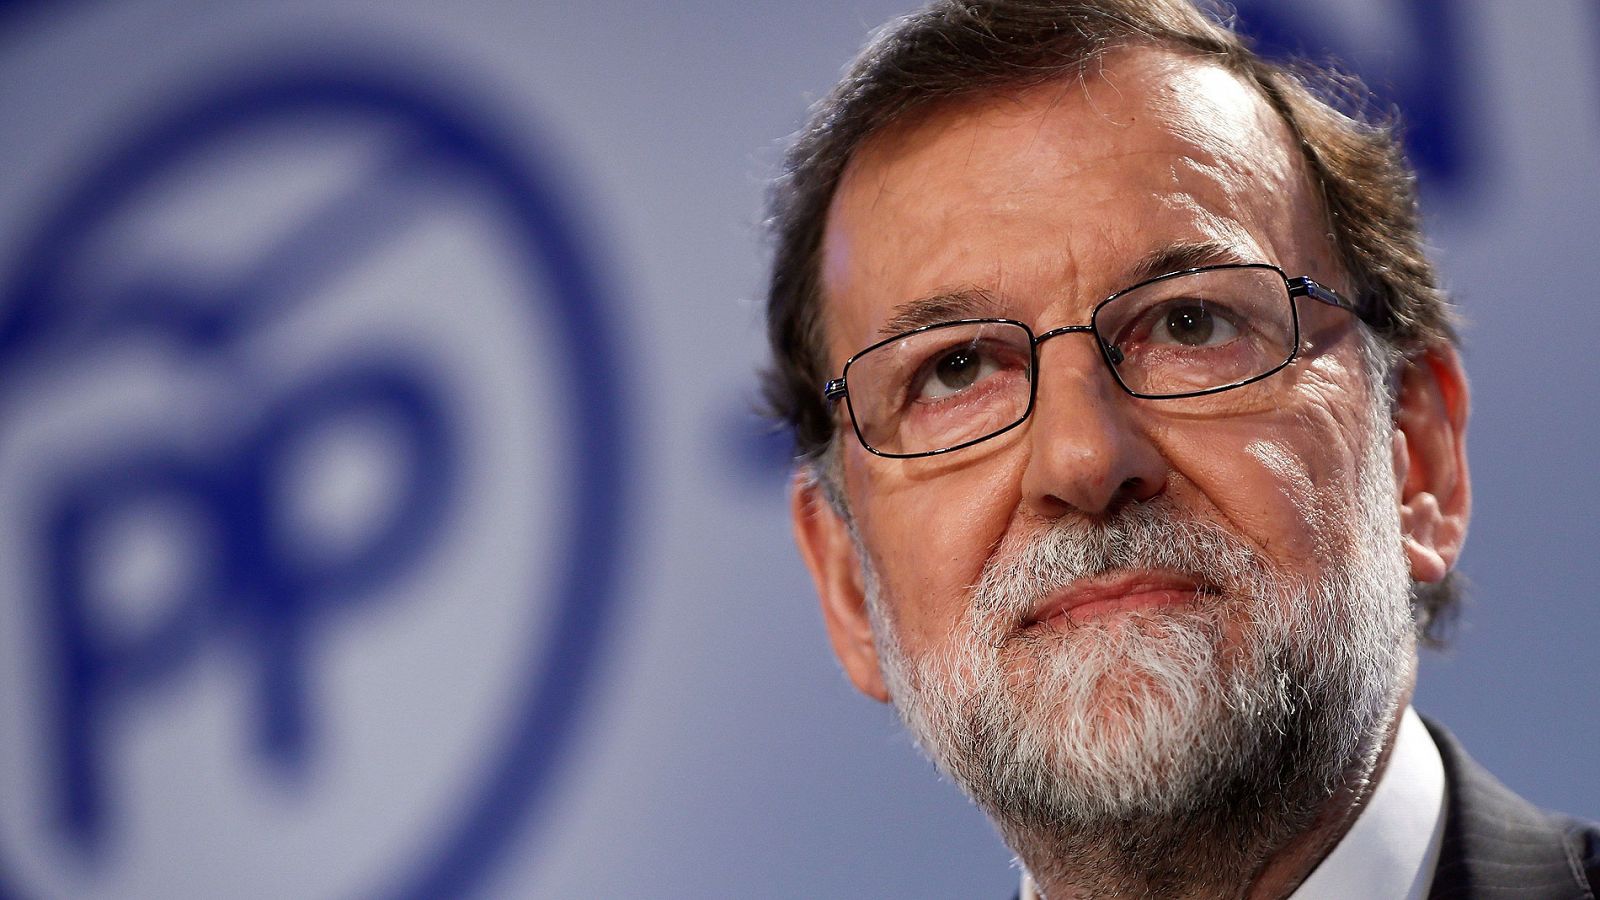 El PP elegirá el 20 y 21 de julio al sucesor de Rajoy